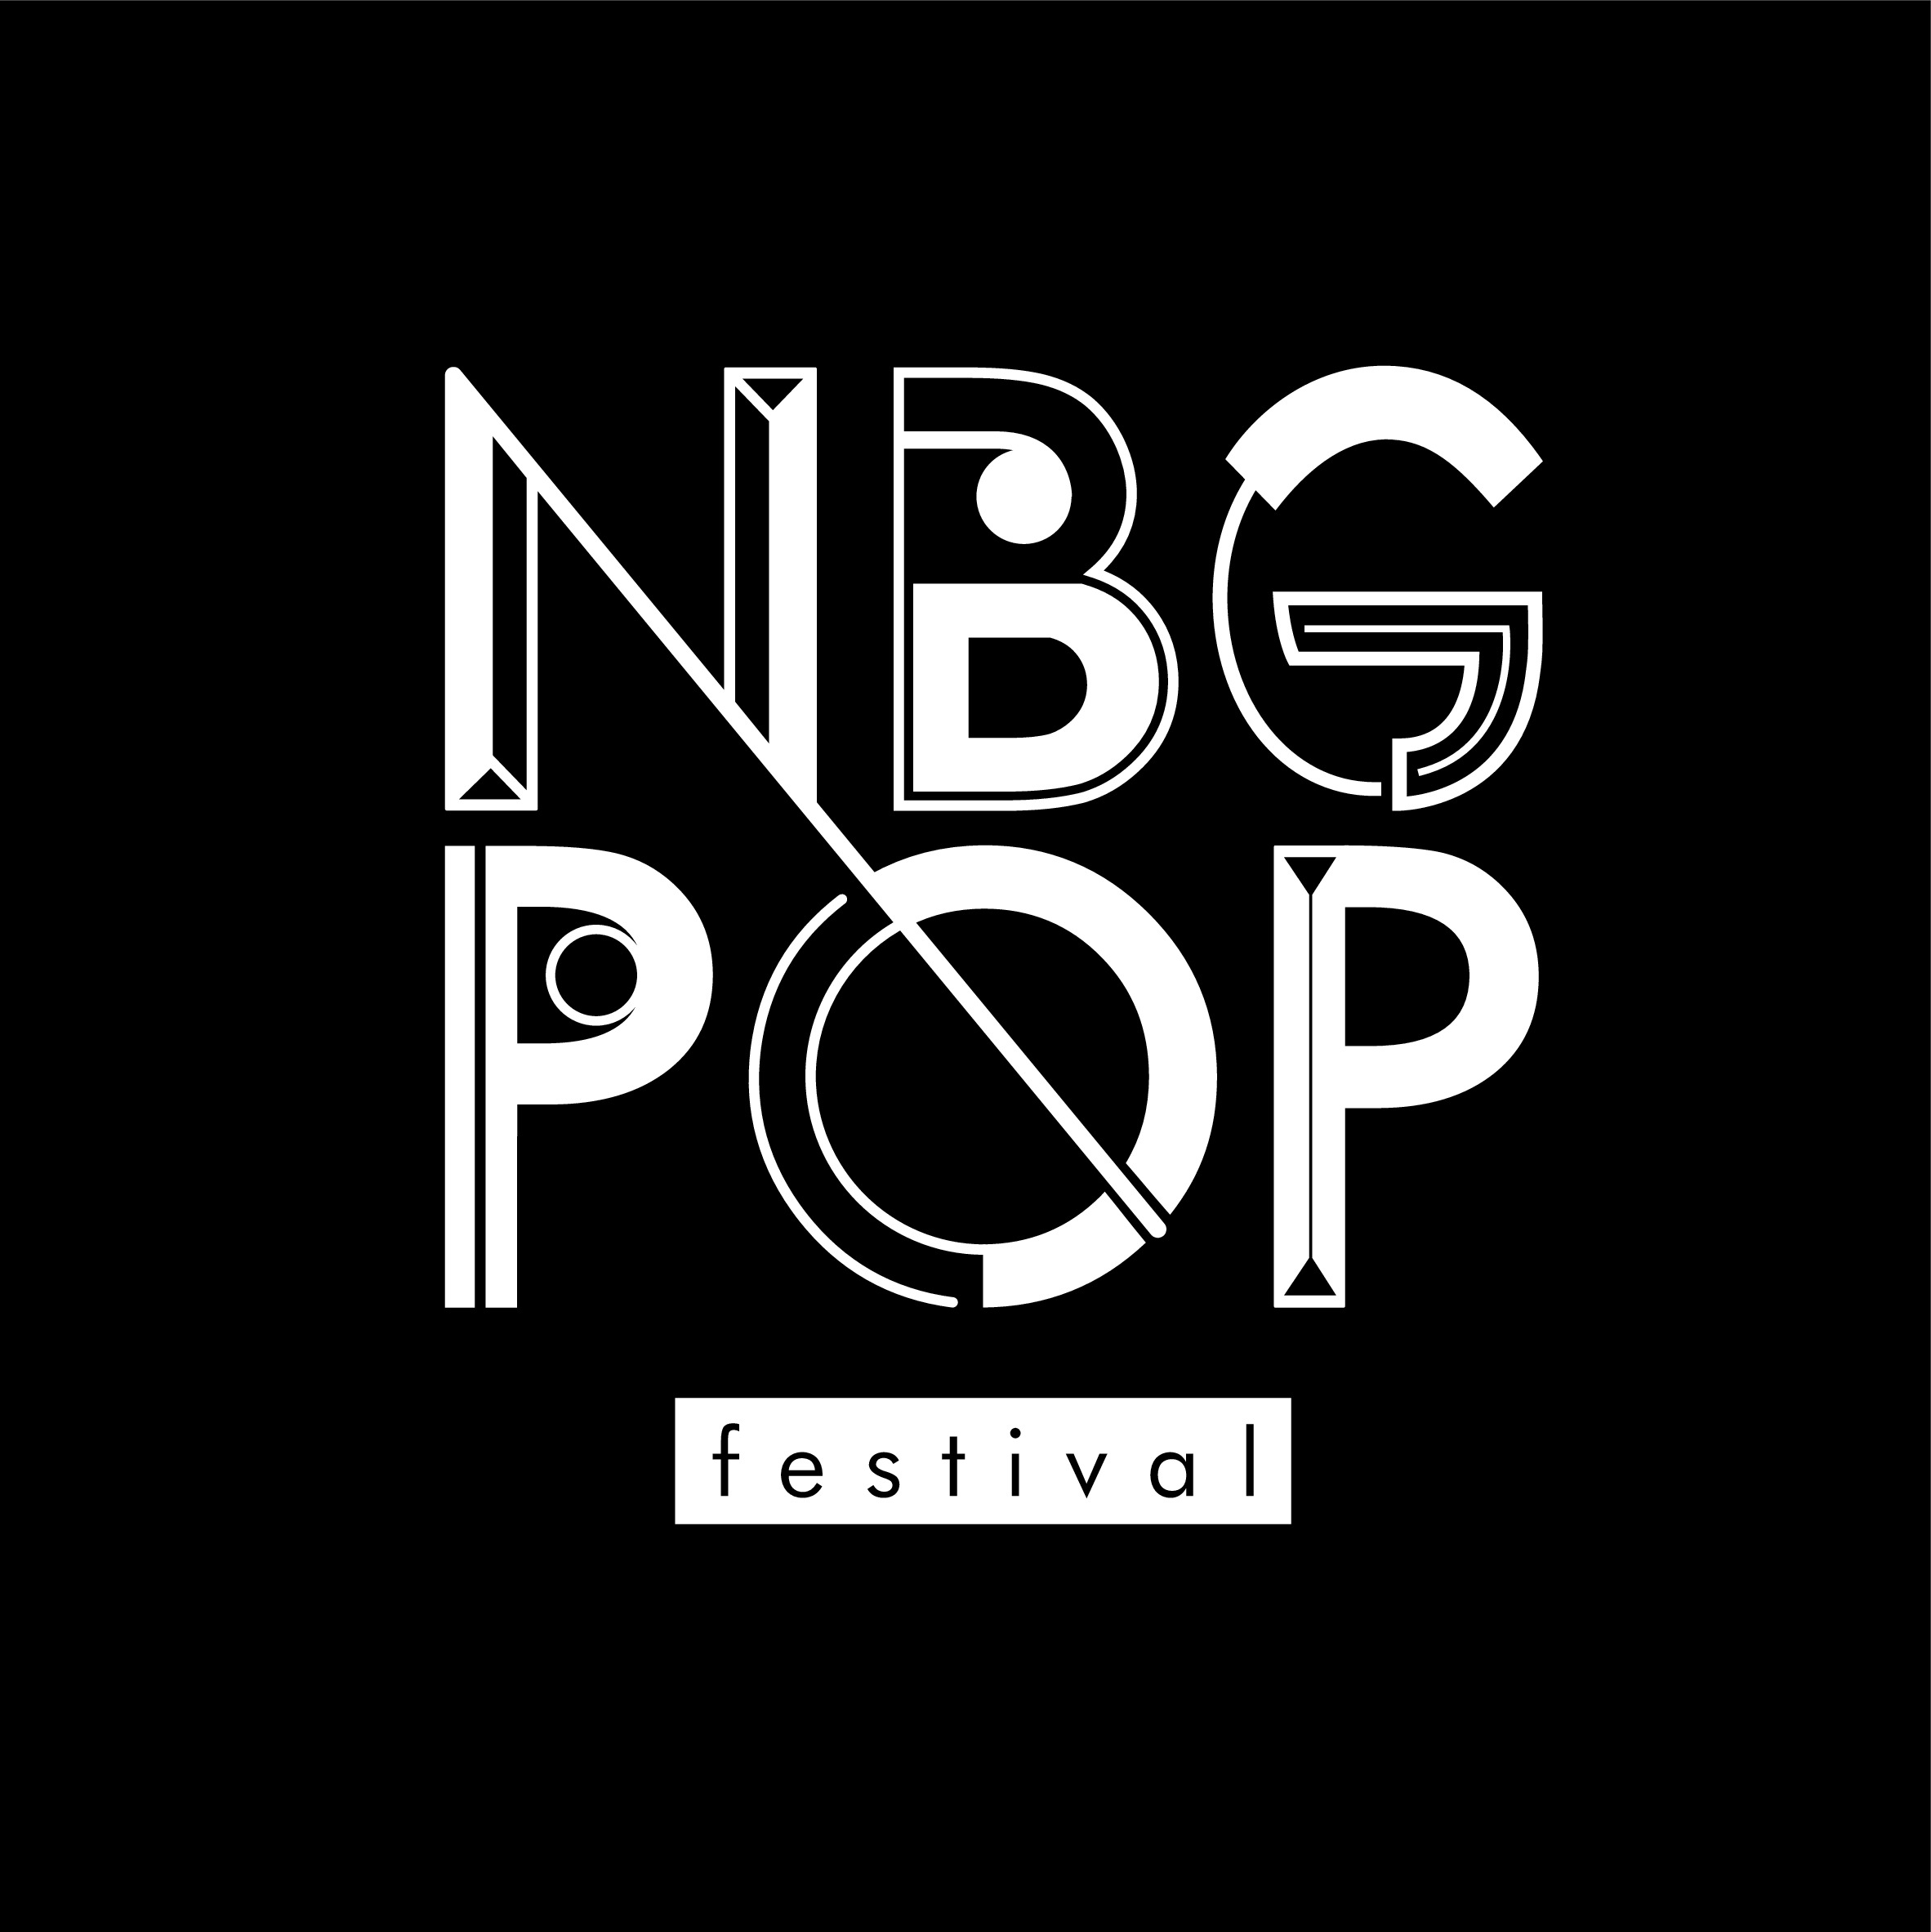 Logo "Nbg Pop Festival"